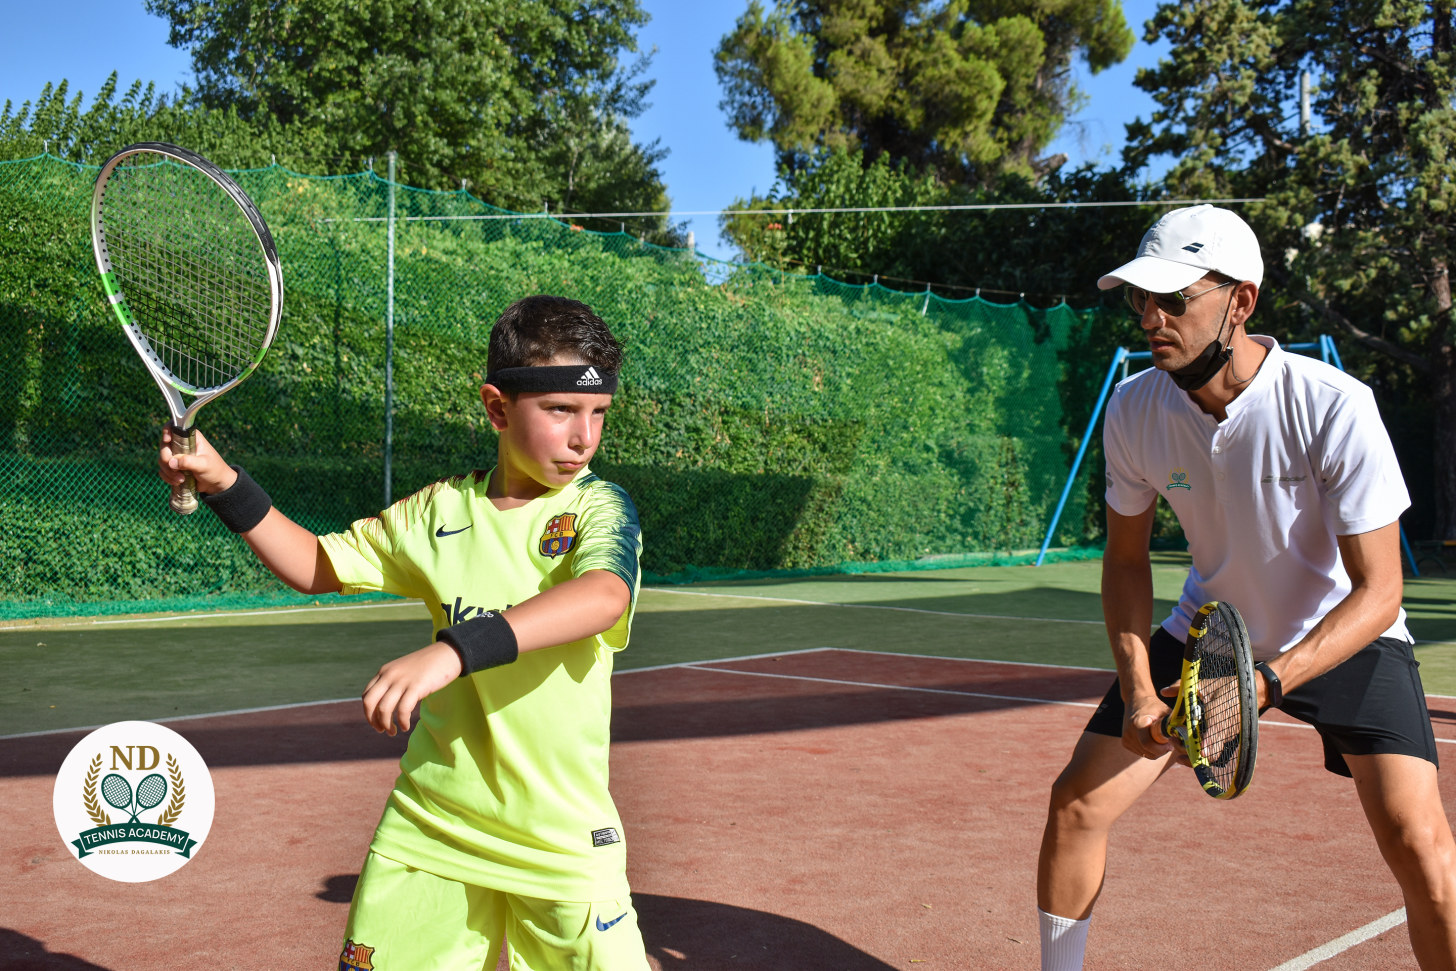 nd-tennis-academy-sportshunter-8